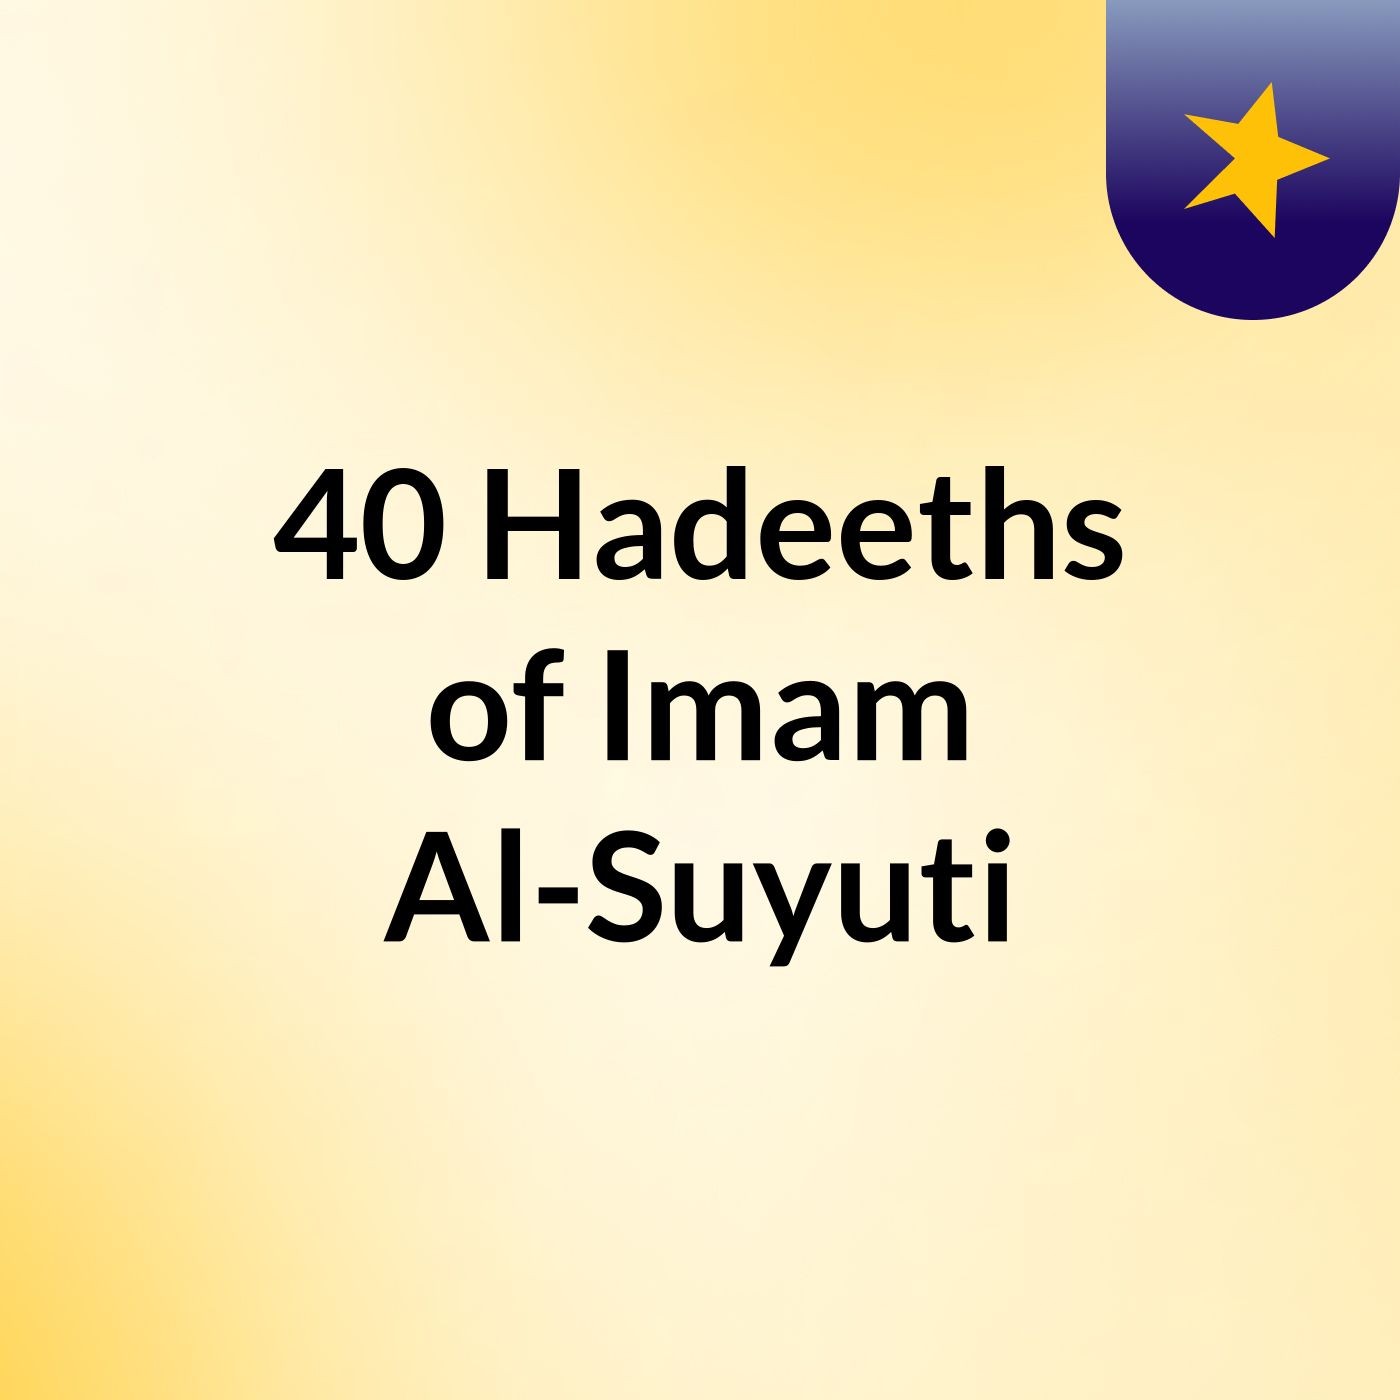 40 Hadeeths of Imam Al-Suyuti - Day 2 Part 2